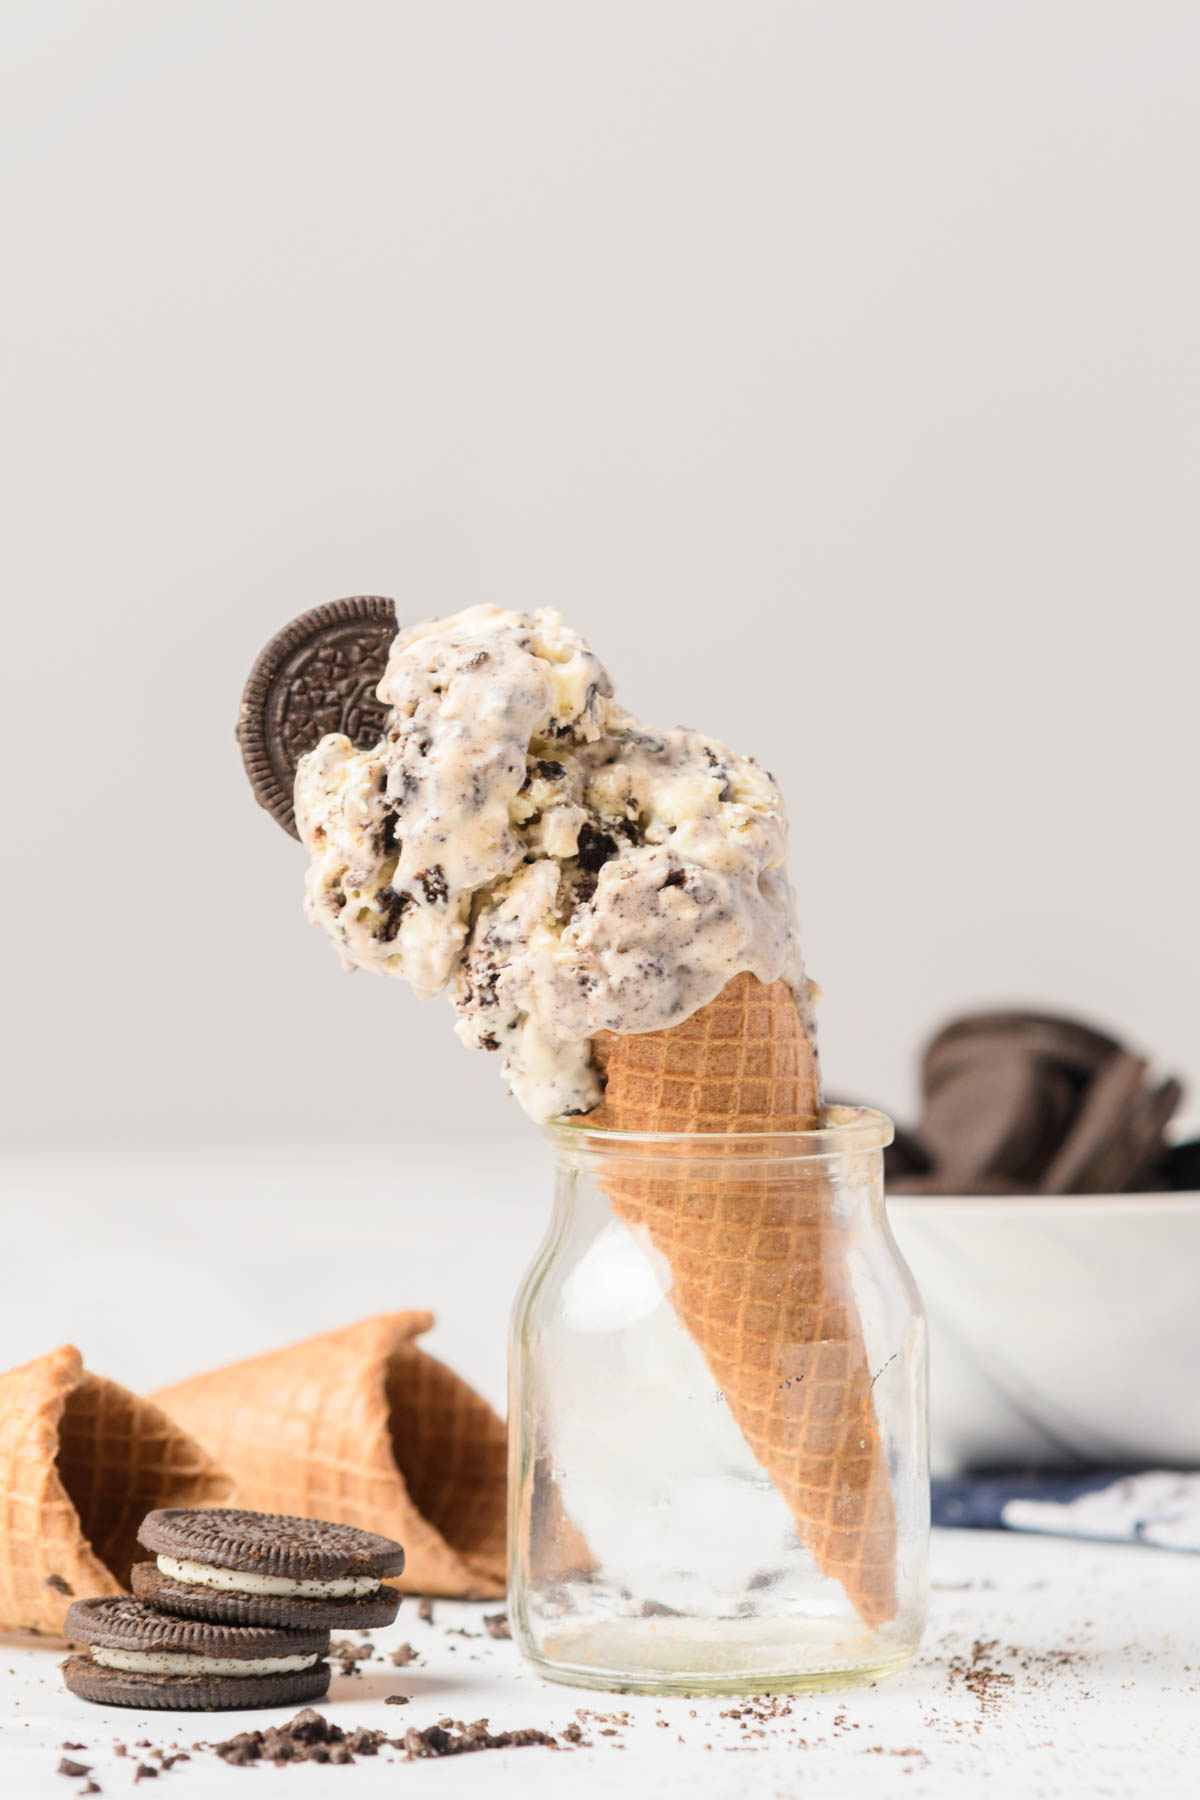 Oreo ice cream cone resting in glass